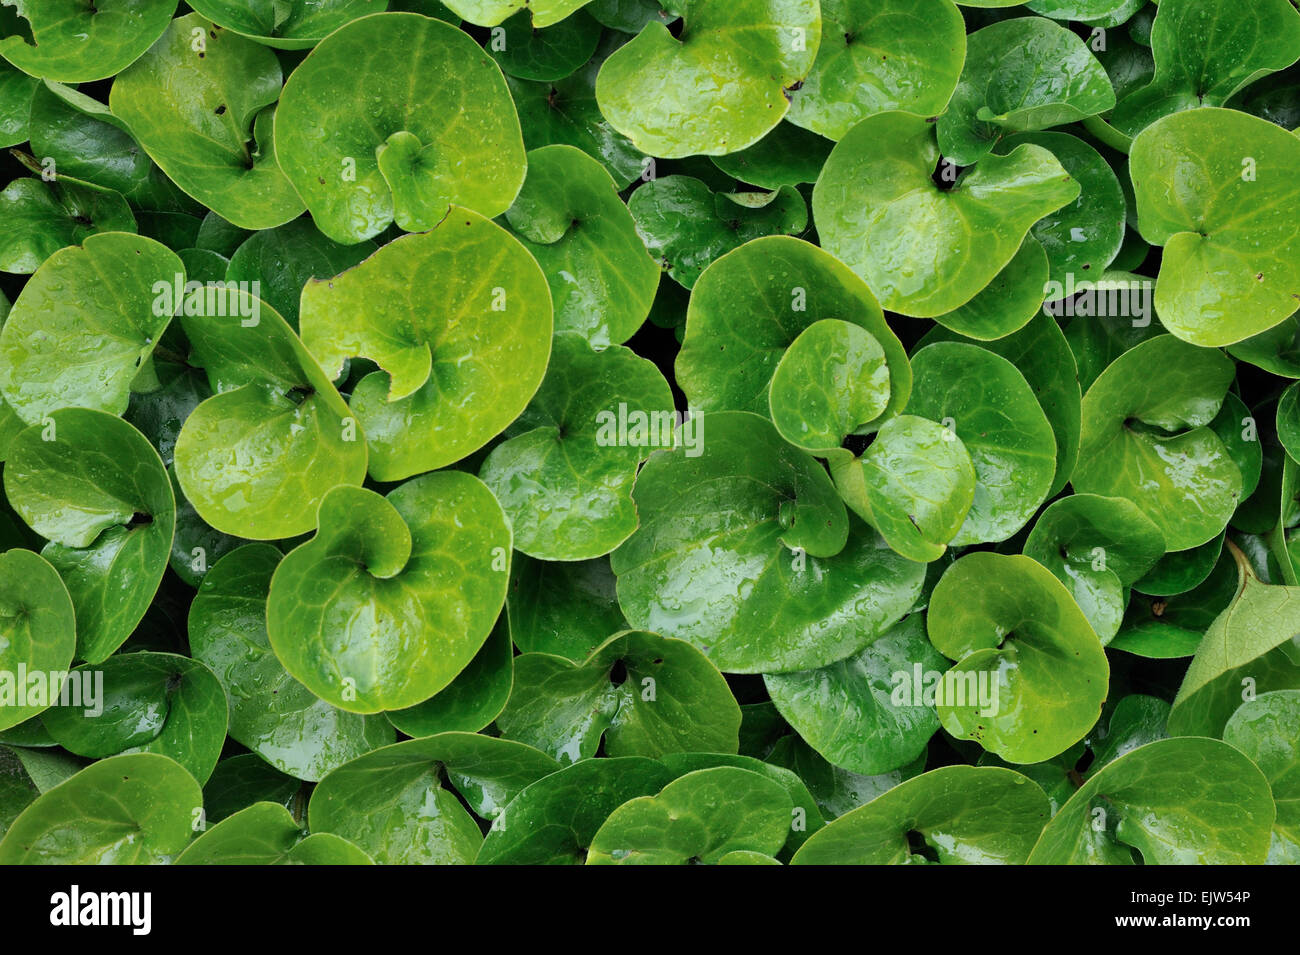 Europäische wilder Ingwer / Asarabacca / Haselwort / wilde Narde (Asarum Europaeum) Großaufnahme von grünen Blättern Stockfoto